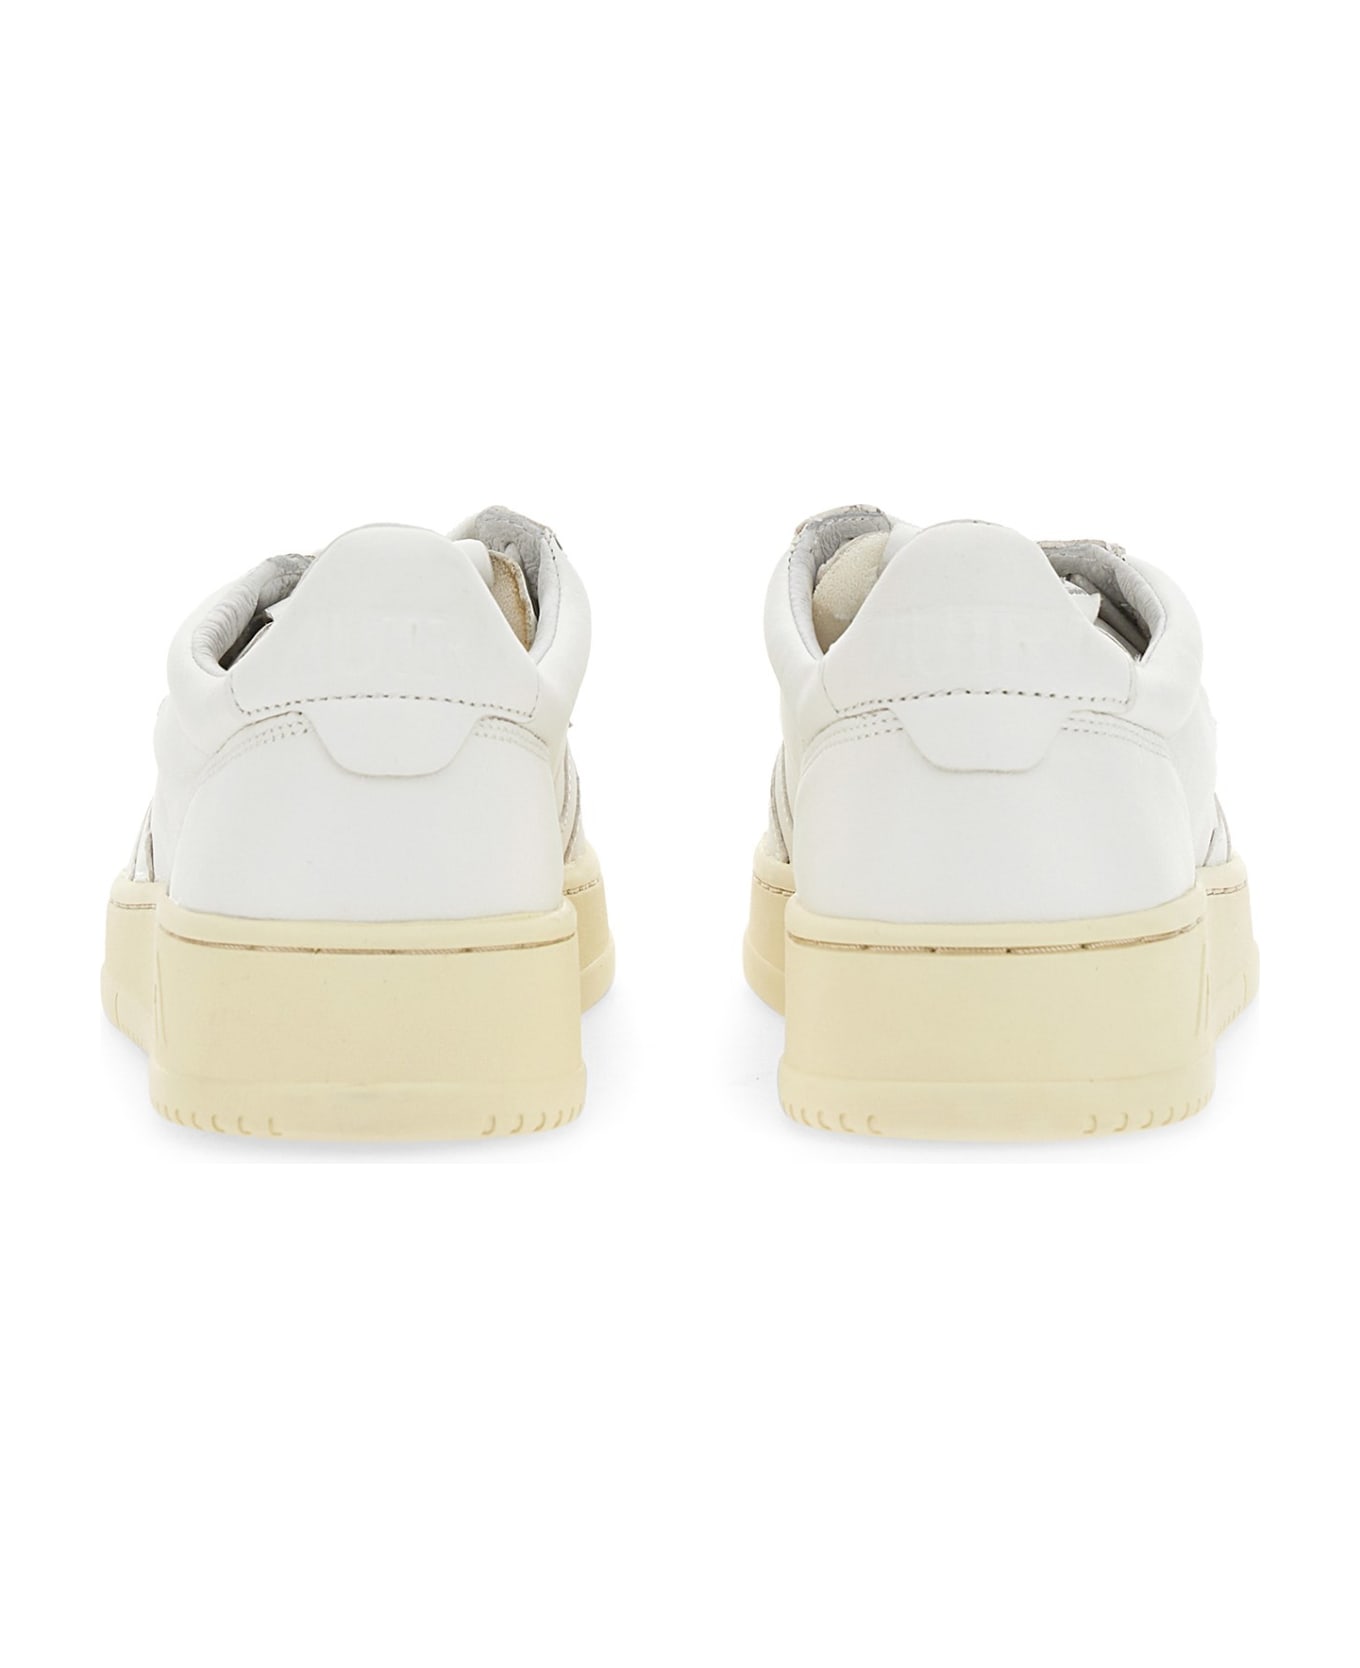 Autry Sneaker Ll20 - WHITE スニーカー